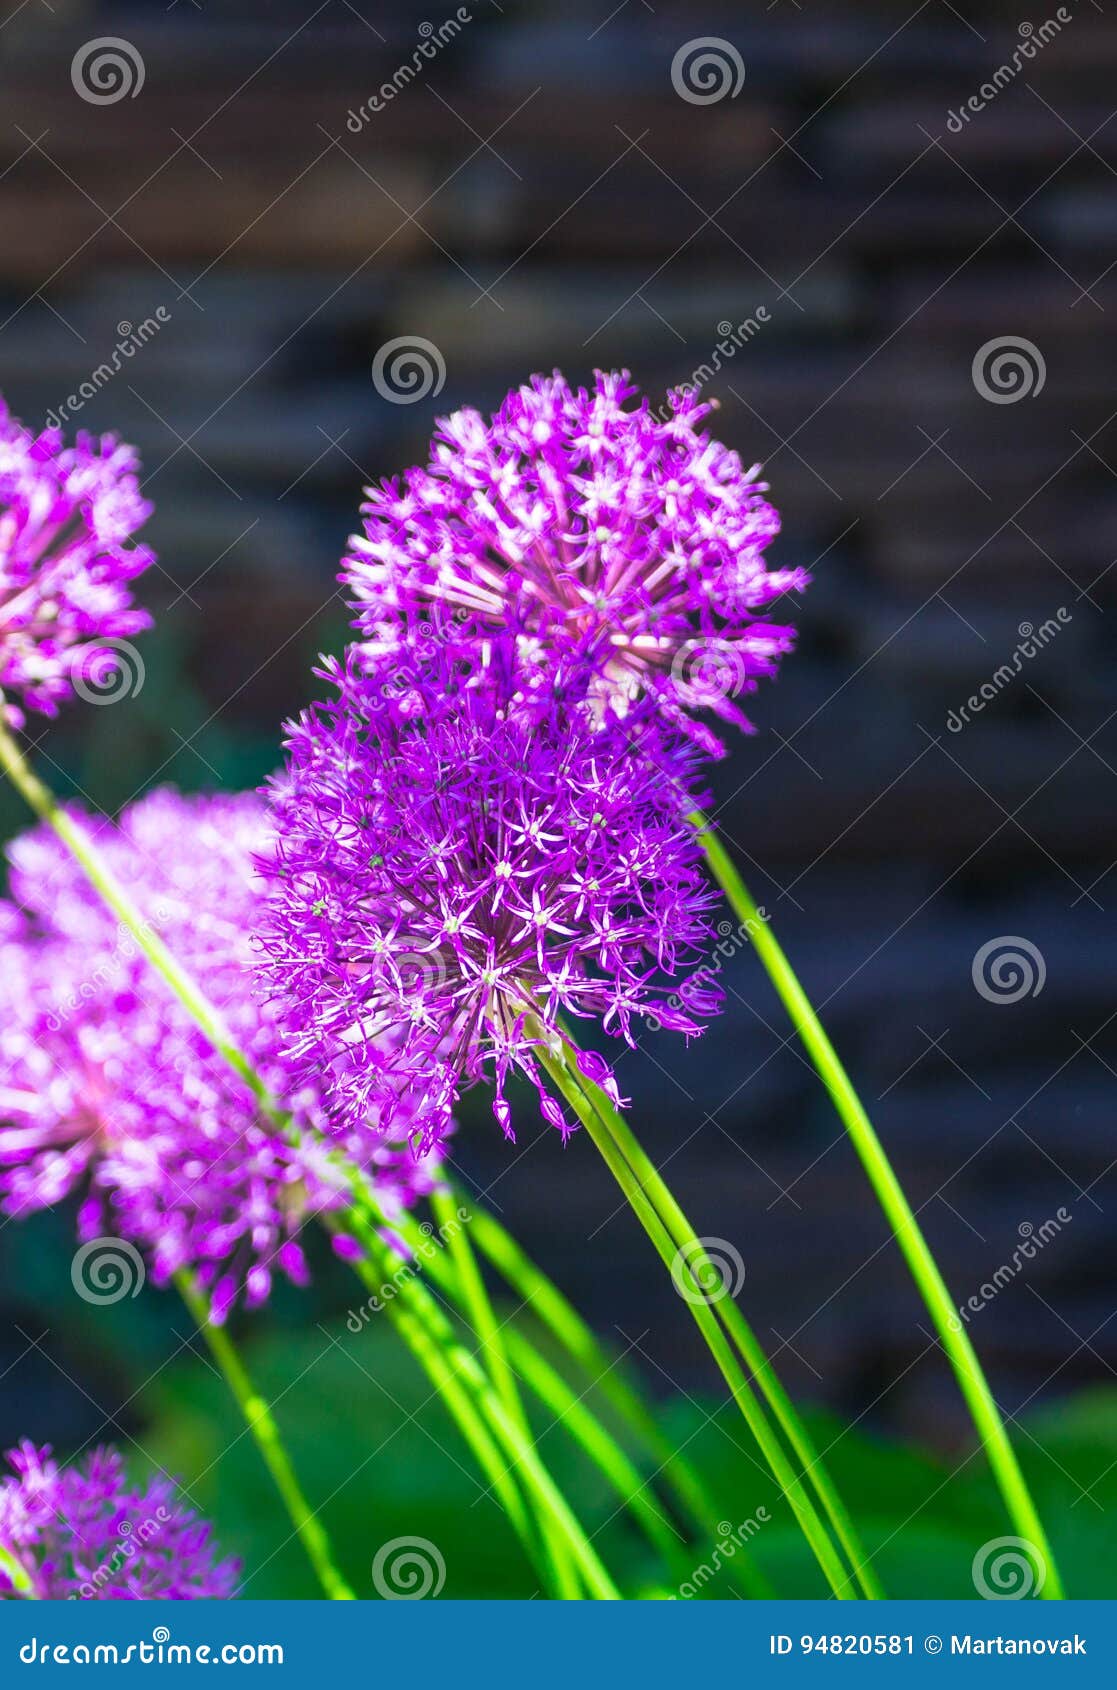 Lauch hollandicum ` purpurrotes Empfindung ` niederländischer Knoblauch oder persische Zwiebel in einem Blumenbeet